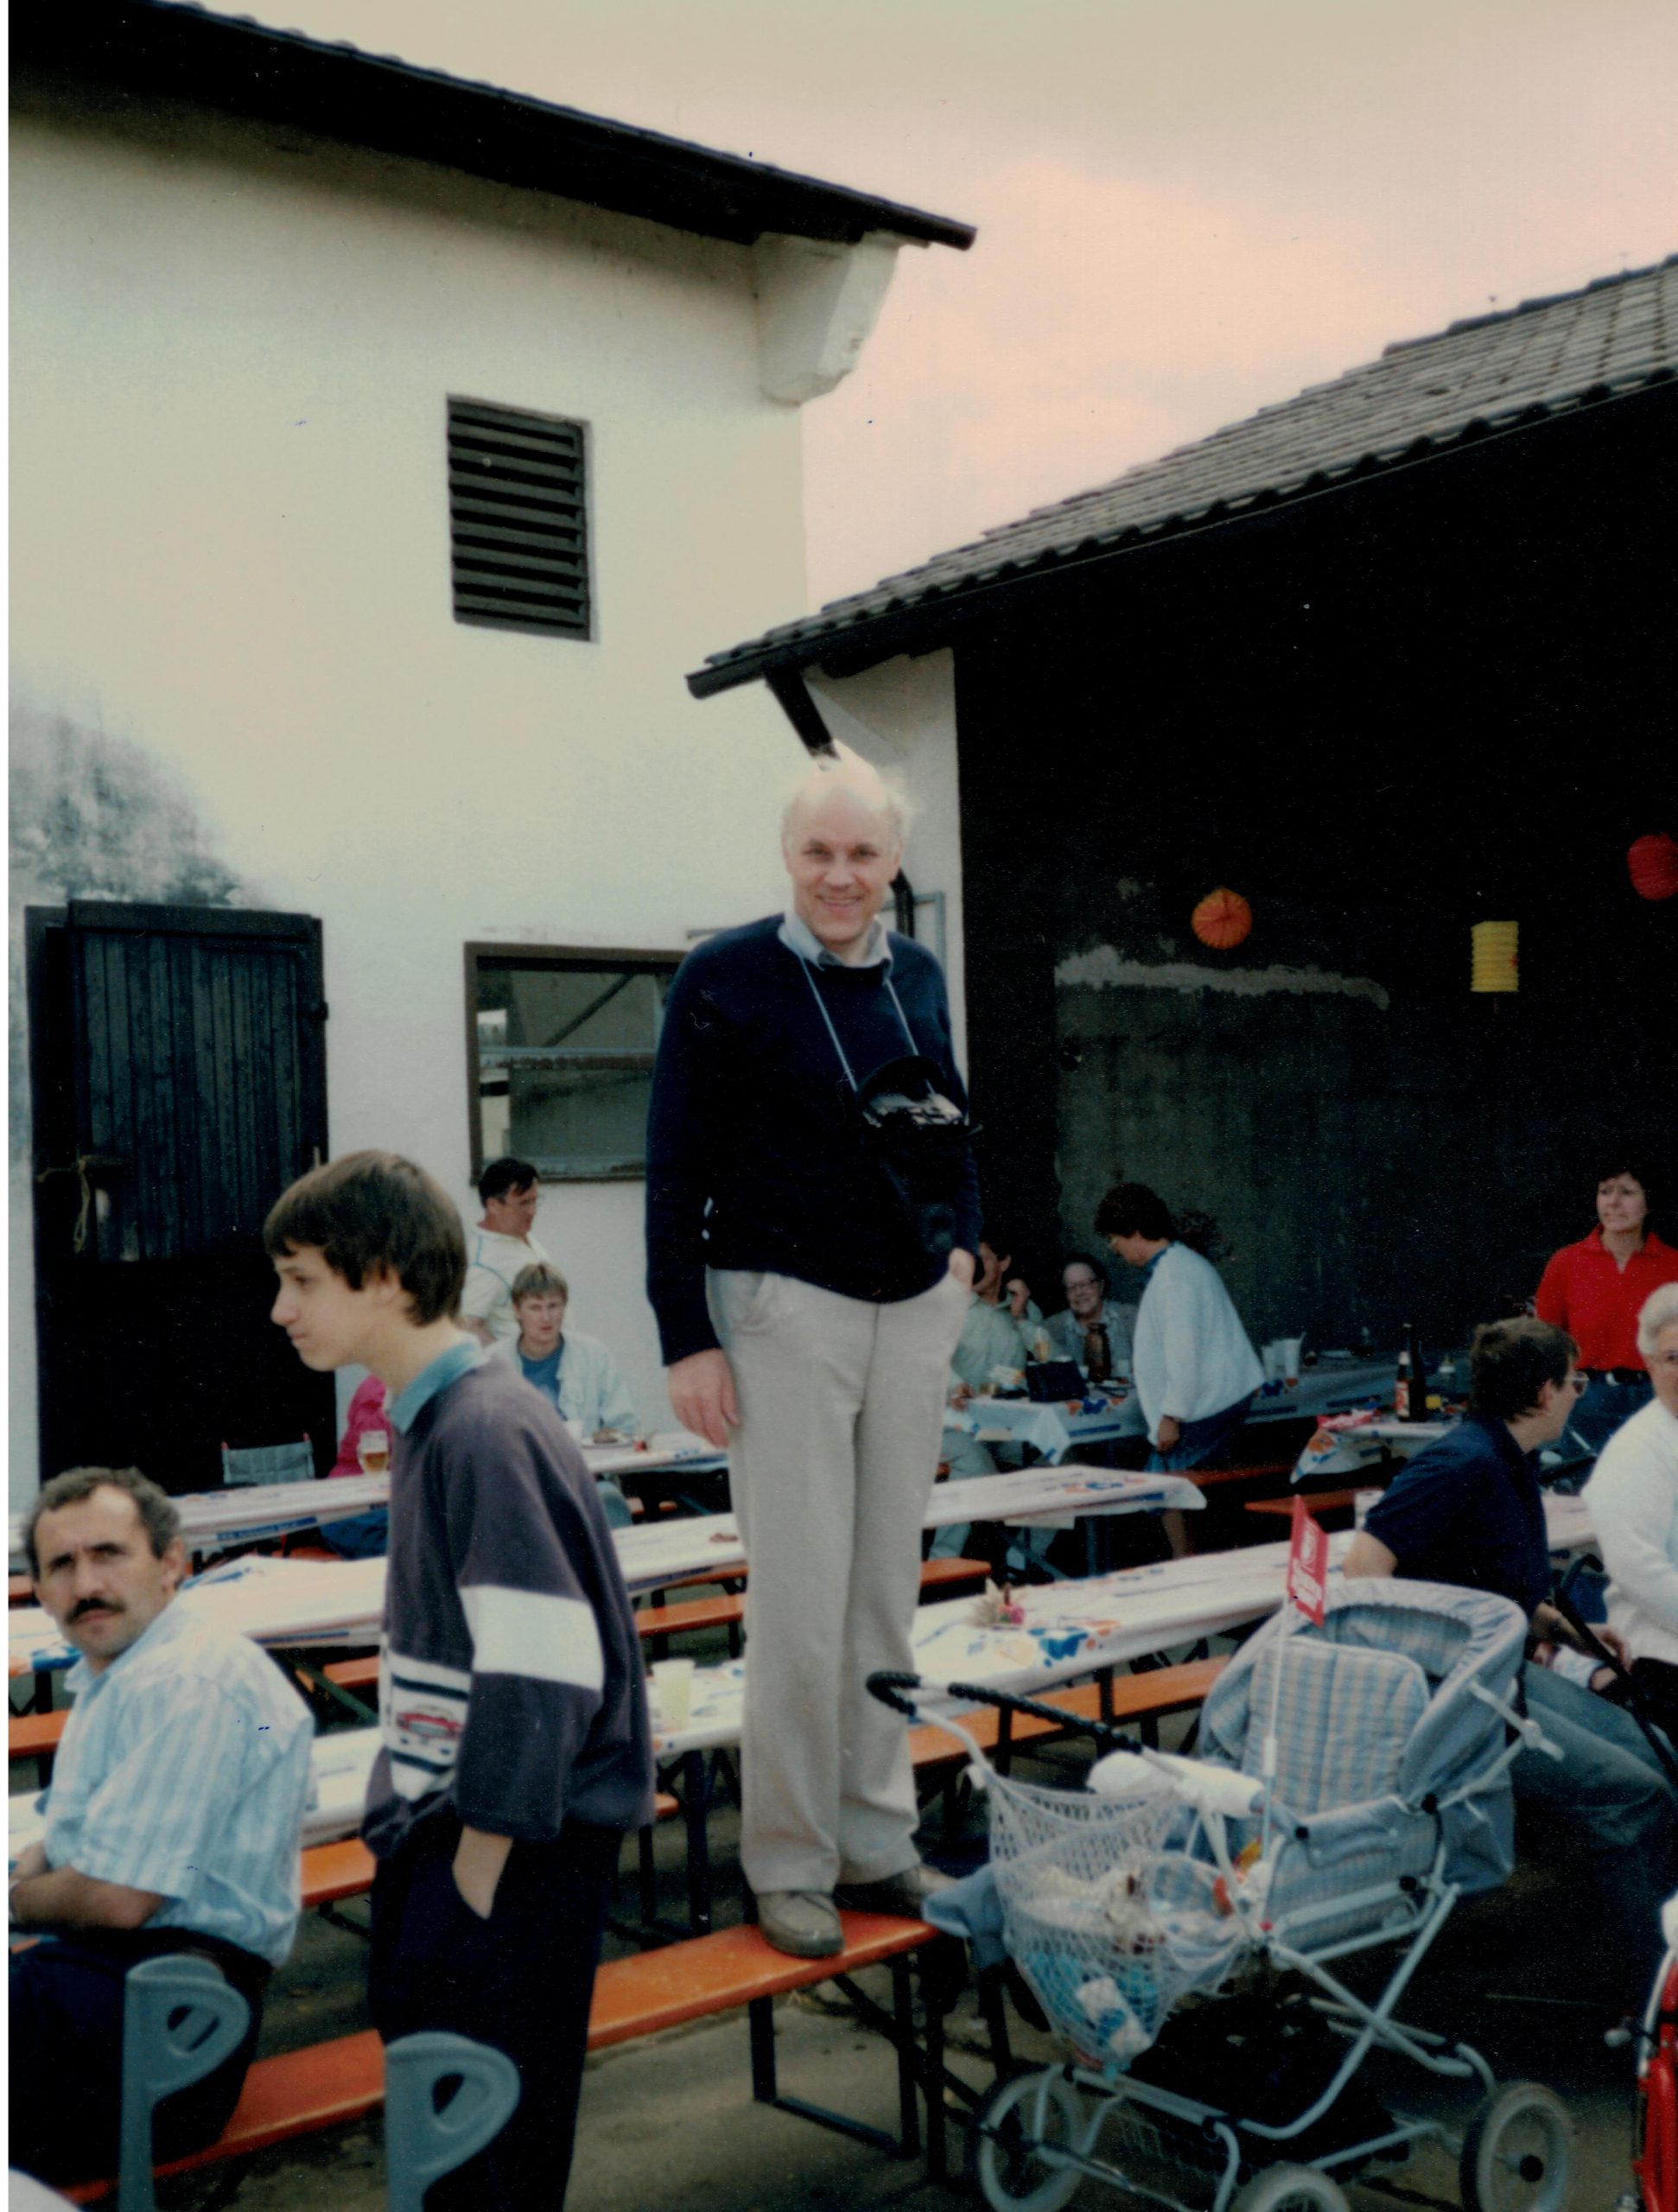 Sommerfest 1988, Dr. Ermert hat eine Kamera umhängen, lächelt und steht dabei auf einer Bierbank in einem Hof, um ihn verteilt Mitglieder, vor ihm ein leere Kinderwagen.